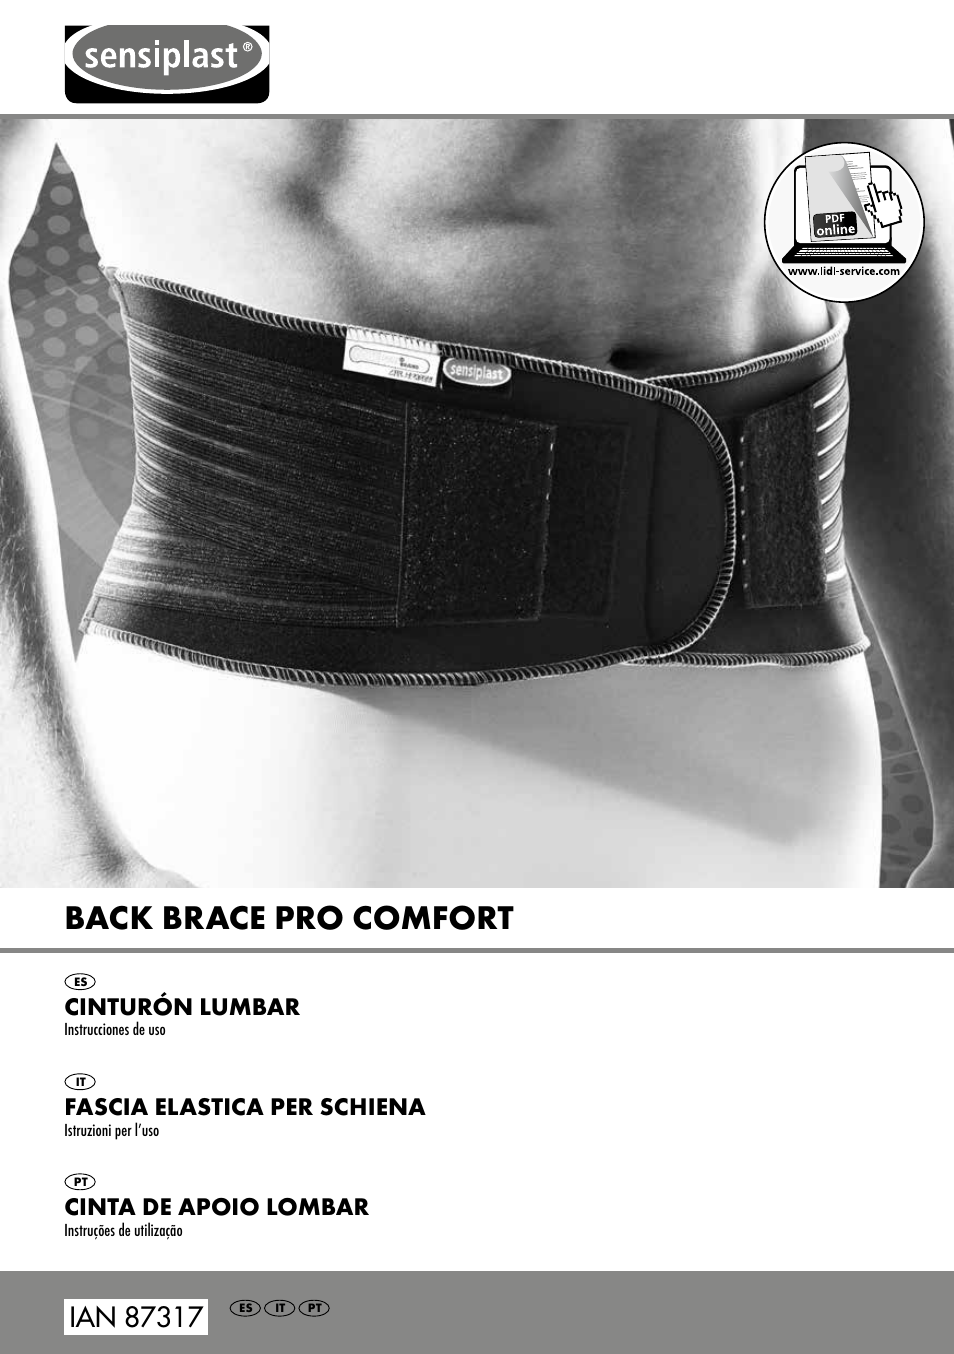 Back brace pro comfort, Cinturón lumbar, Fascia elastica per schiena |  Sensiplast Pro Comfort Back Brace User Manual | Page 5 / 24